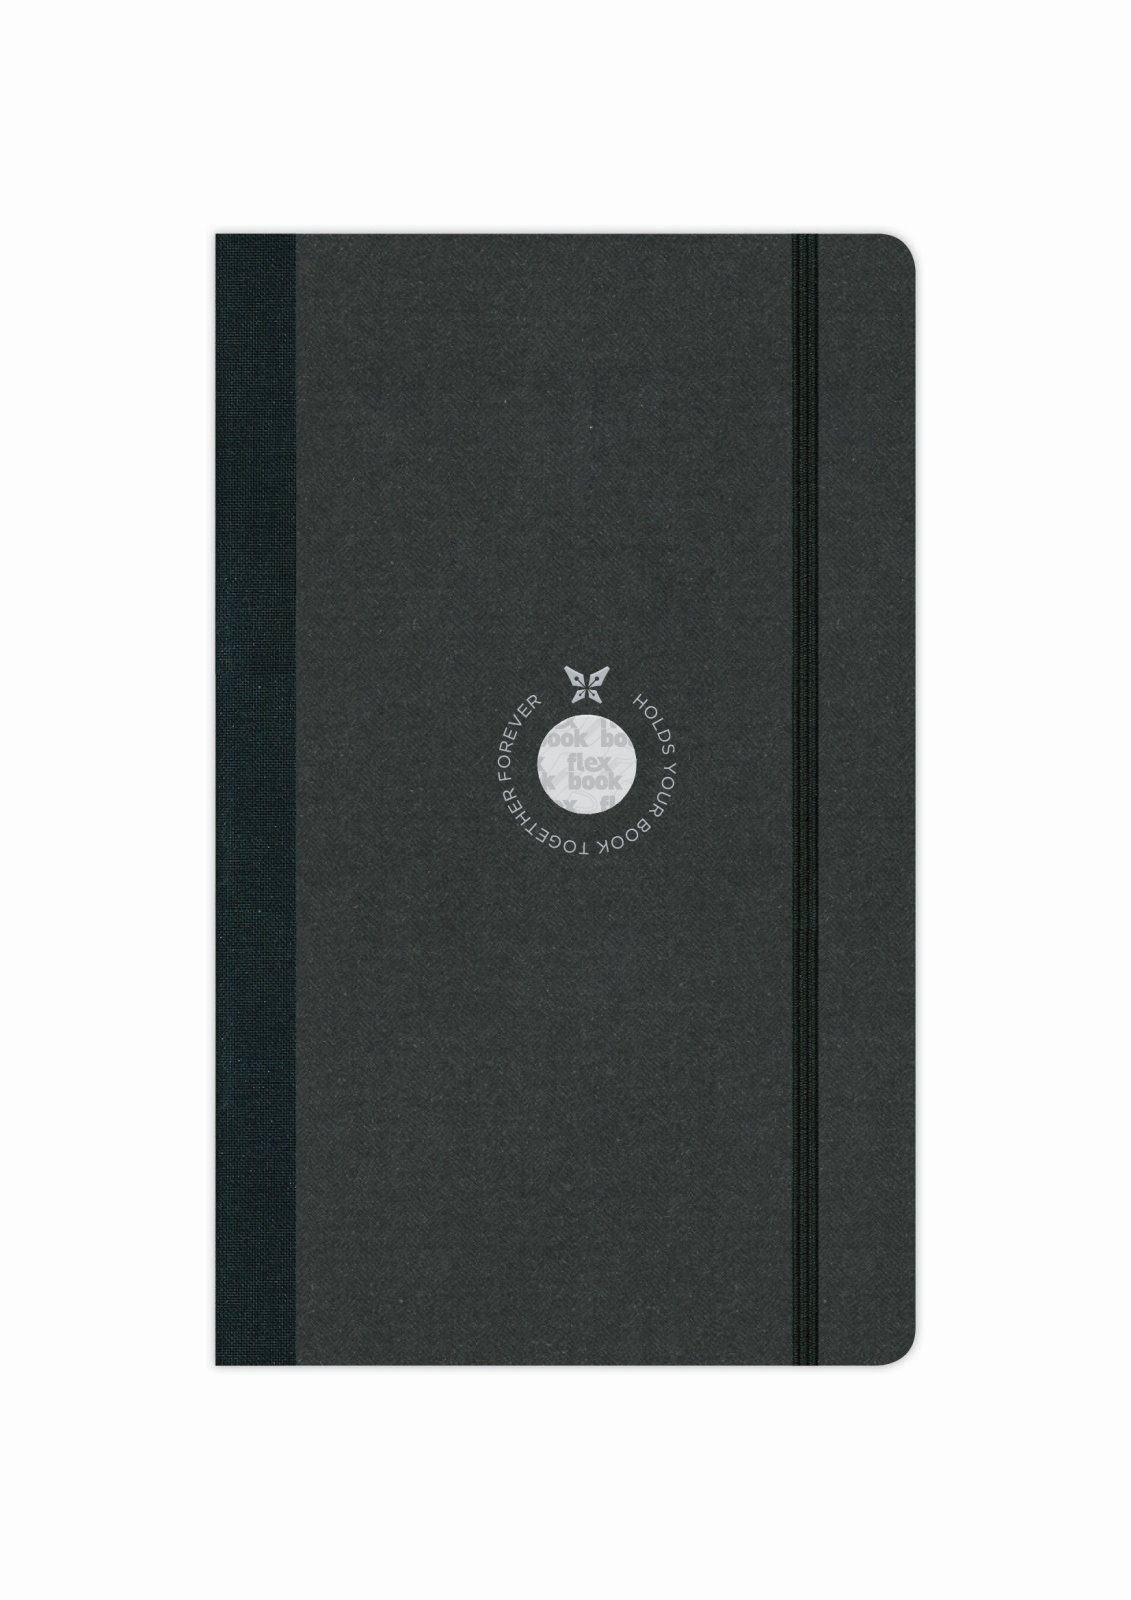 Flexbook Notizbuch Flexbook Globel Notizbuch mit Open Liniert Seiten Schwarz verschied 21 * Elastikband Diary blanko/linierte cm 13